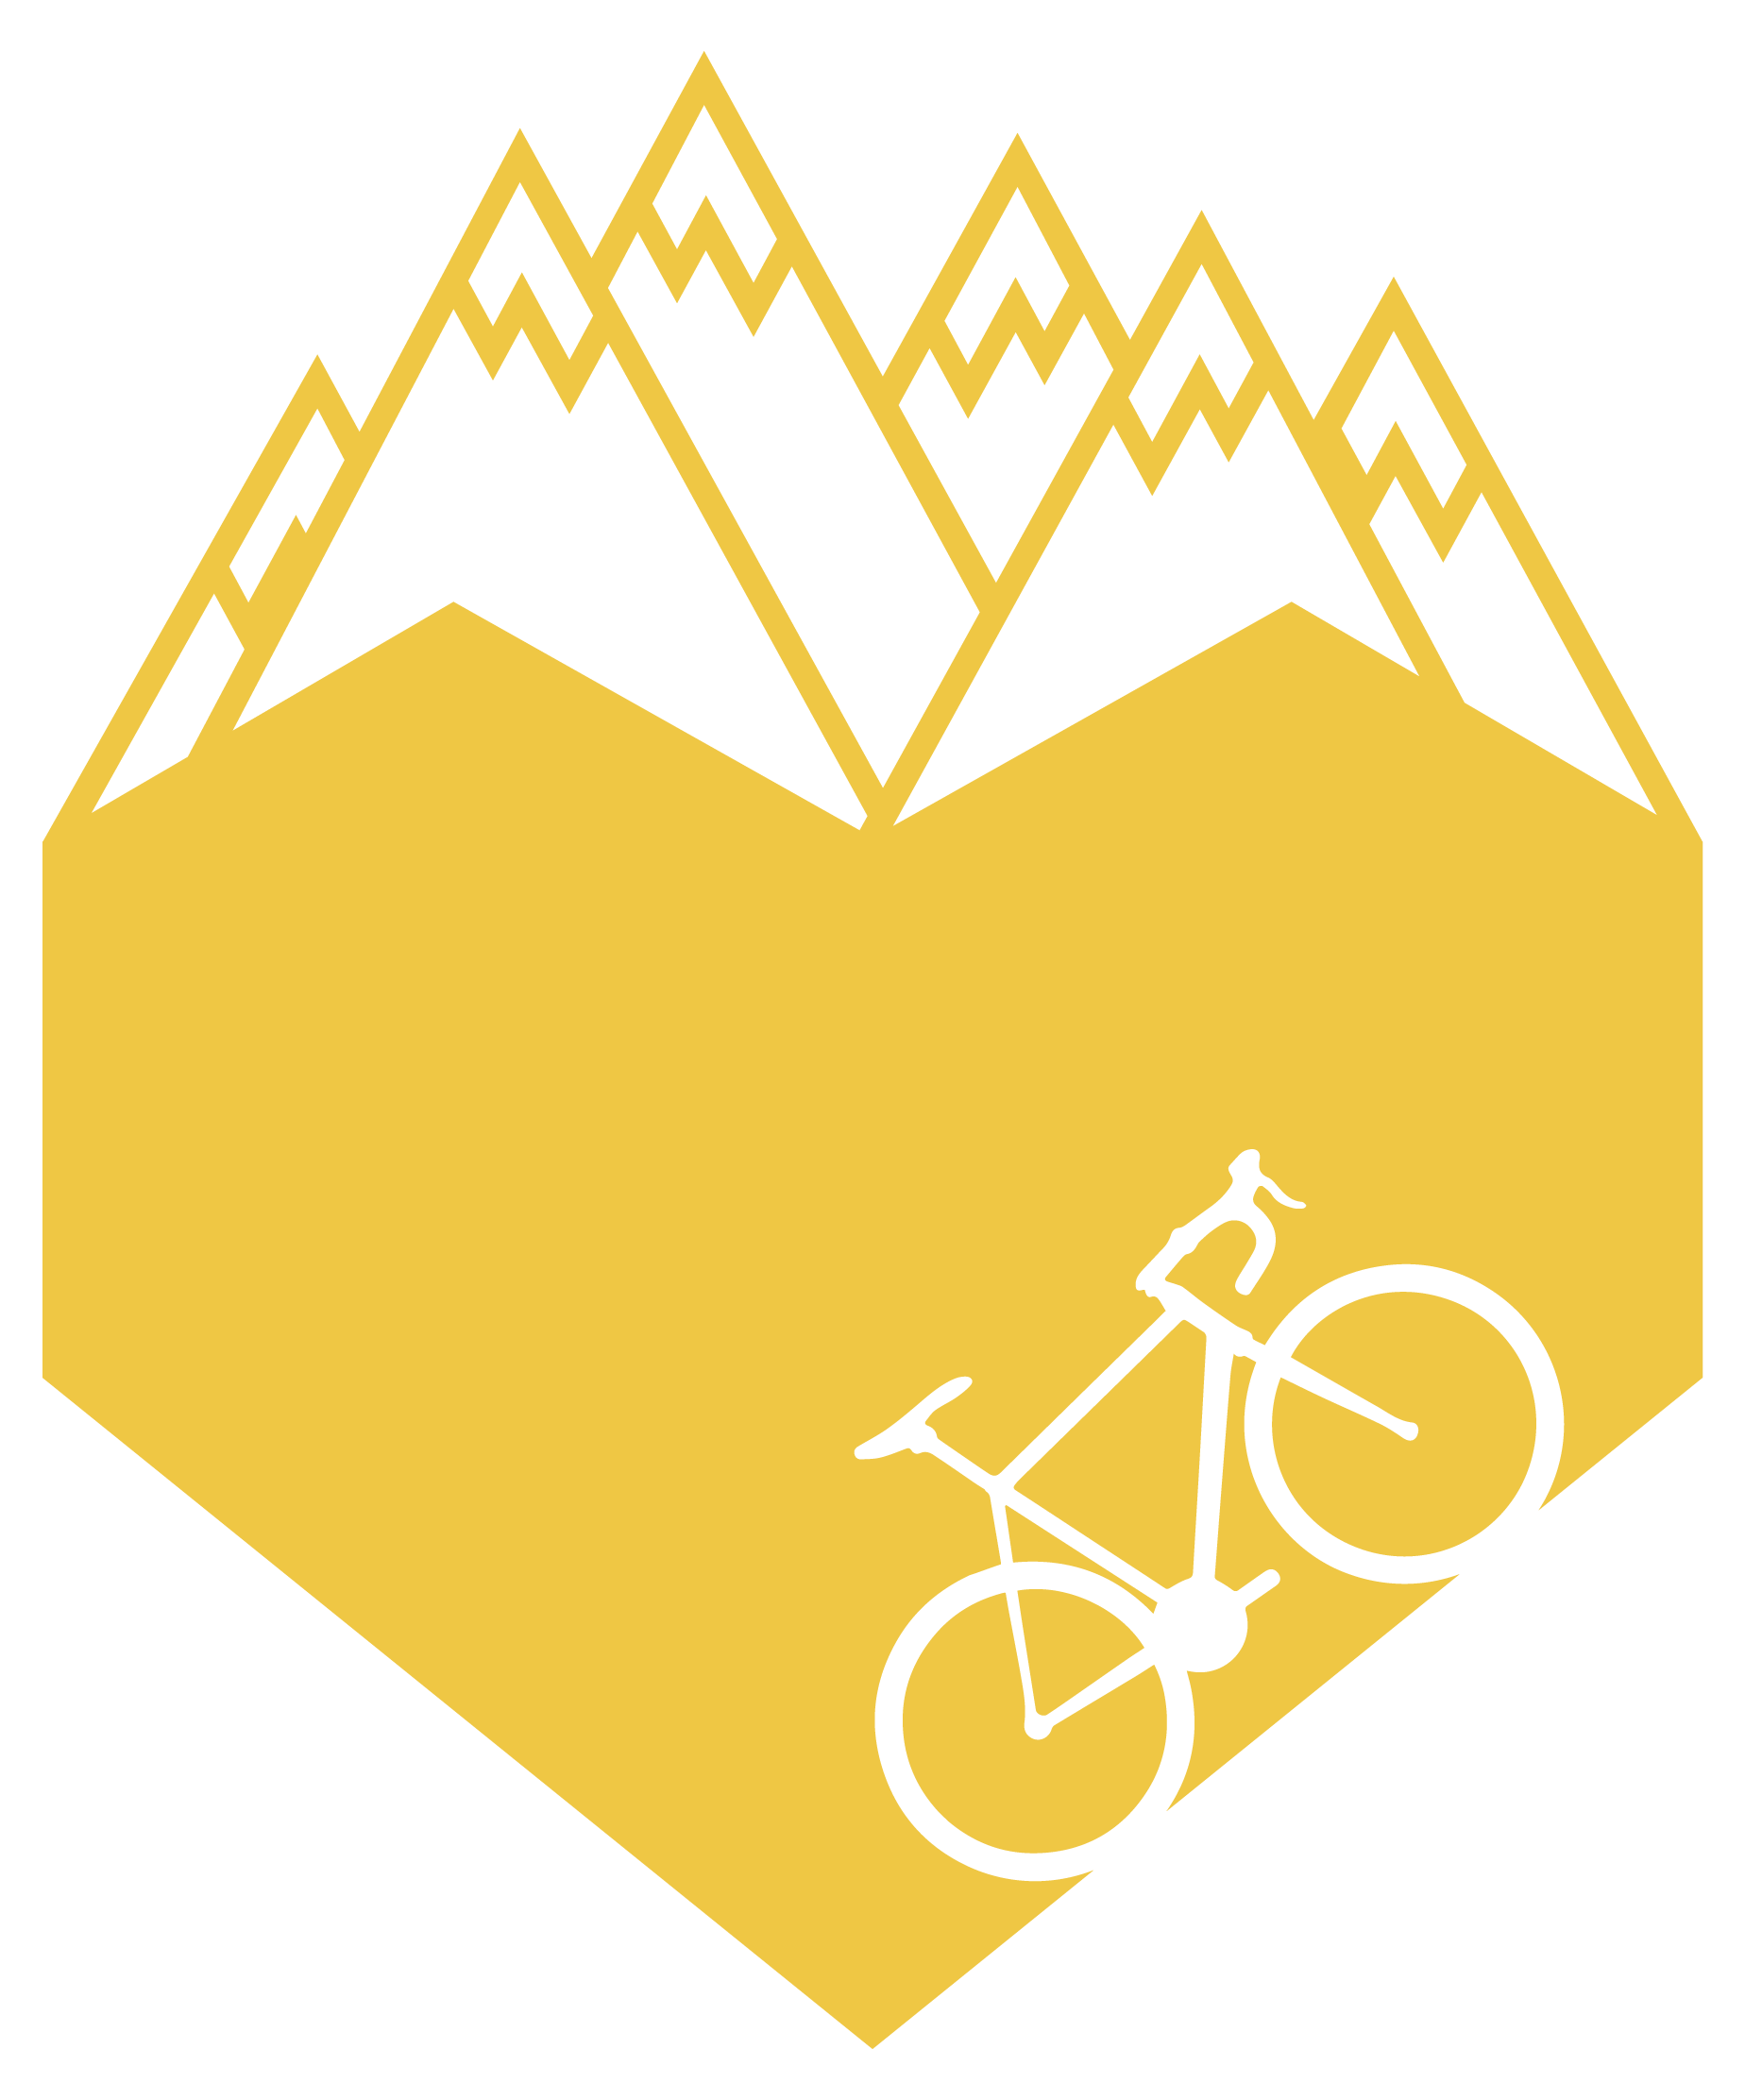 randonneur.org logo, a road bike climbing the mountains